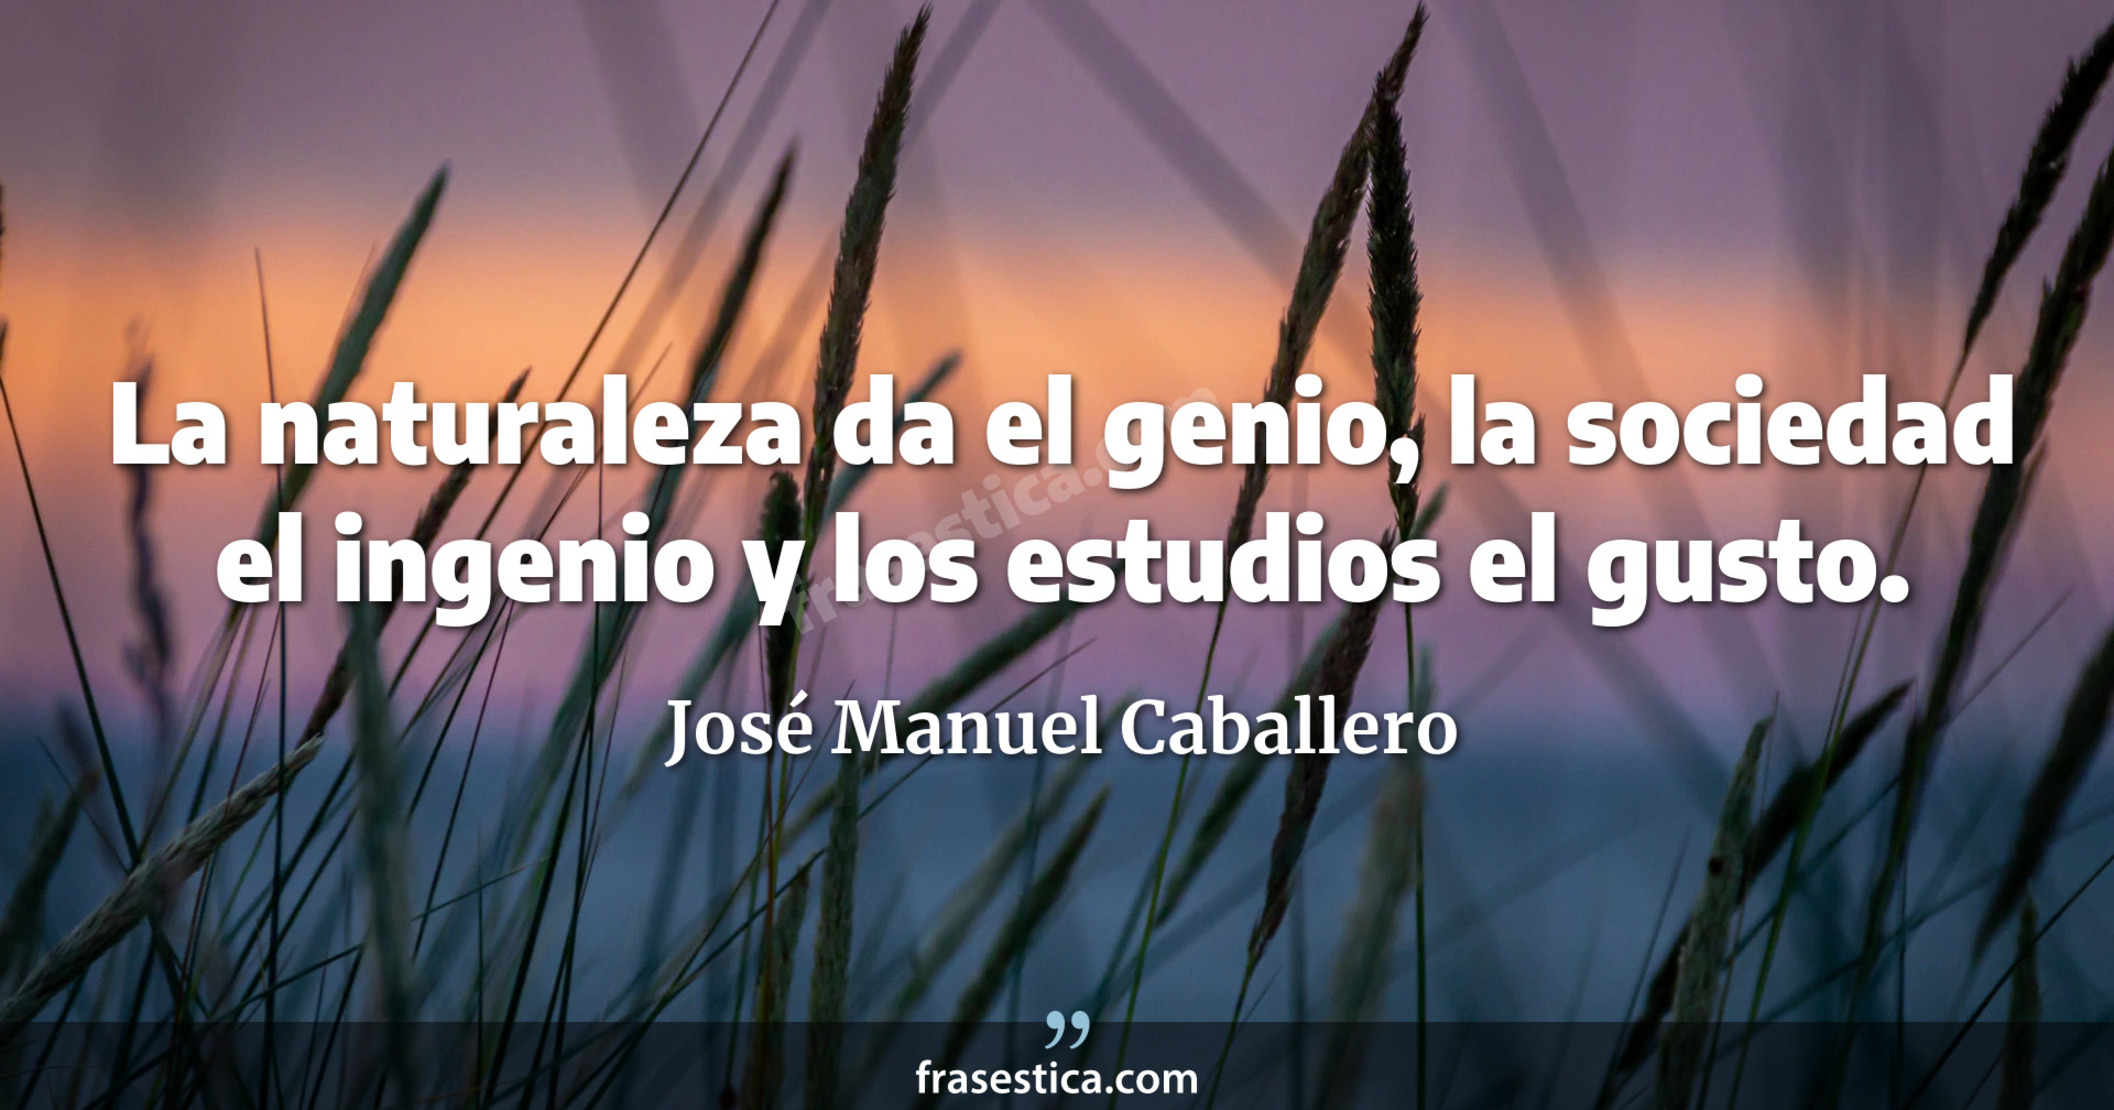 La naturaleza da el genio, la sociedad el ingenio y los estudios el gusto. - José Manuel Caballero